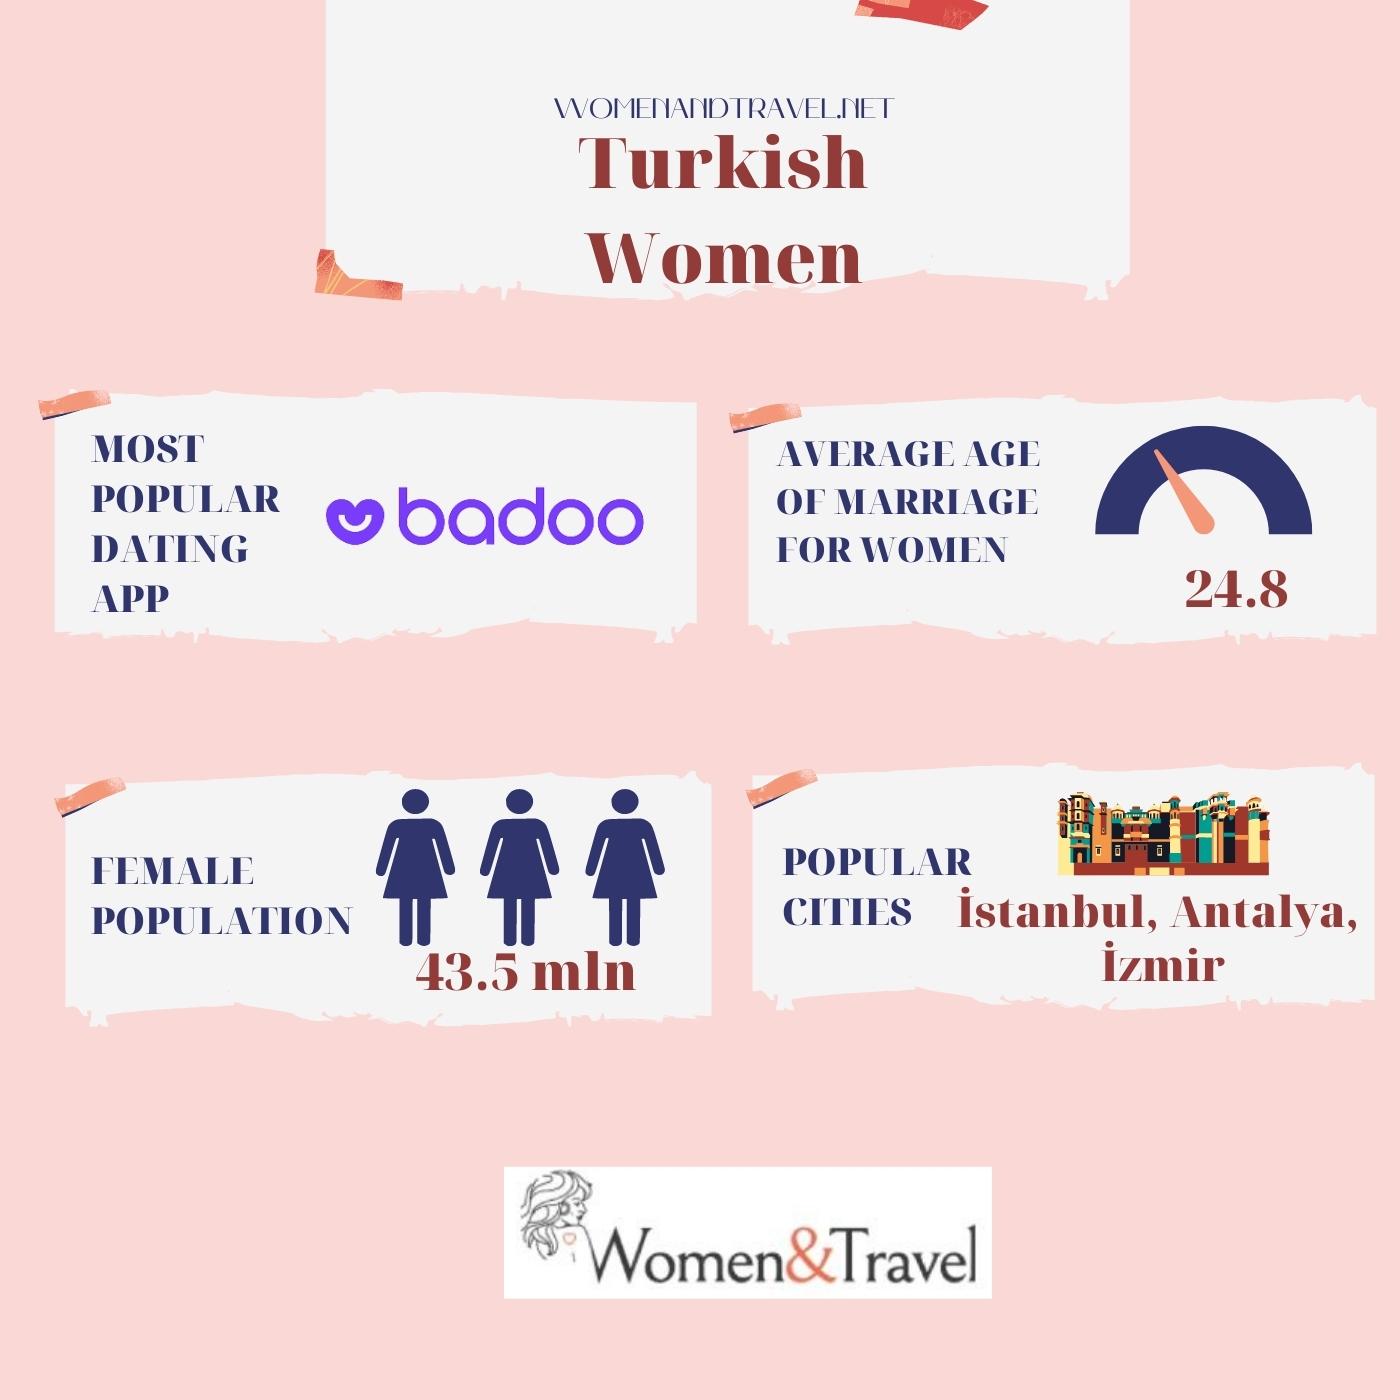 Turkish Women infographic